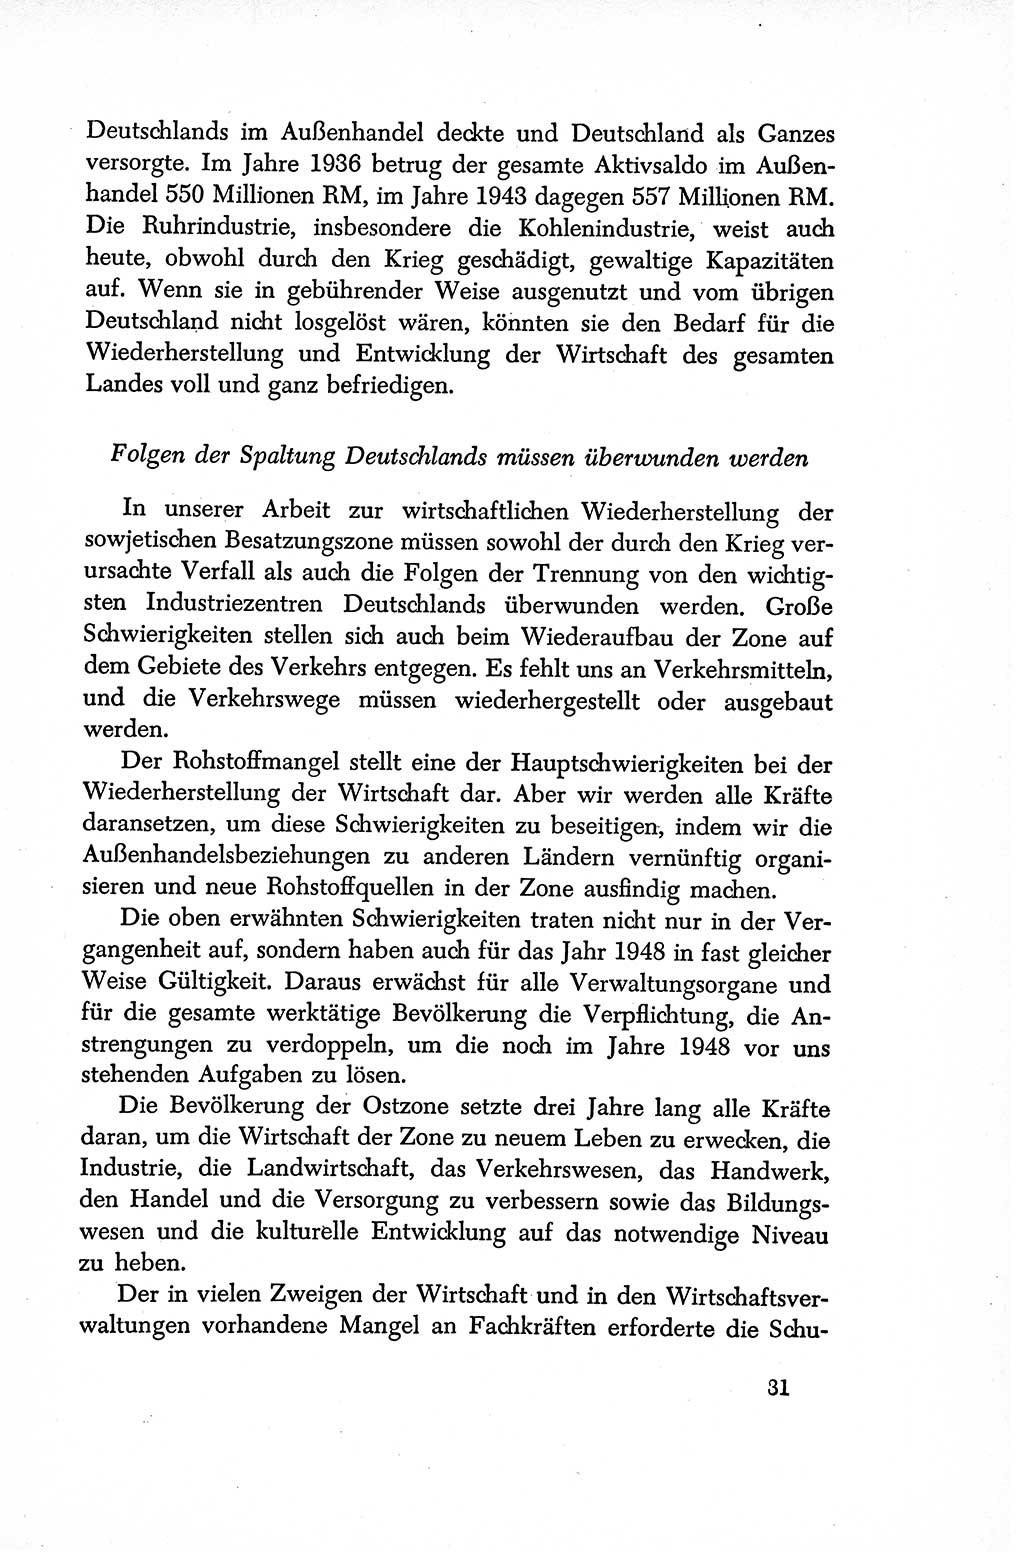 Dokumente der Sozialistischen Einheitspartei Deutschlands (SED) [Sowjetische Besatzungszone (SBZ) Deutschlands/Deutsche Demokratische Republik (DDR)] 1948-1950, Seite 31 (Dok. SED SBZ Dtl. DDR 1948-1950, S. 31)